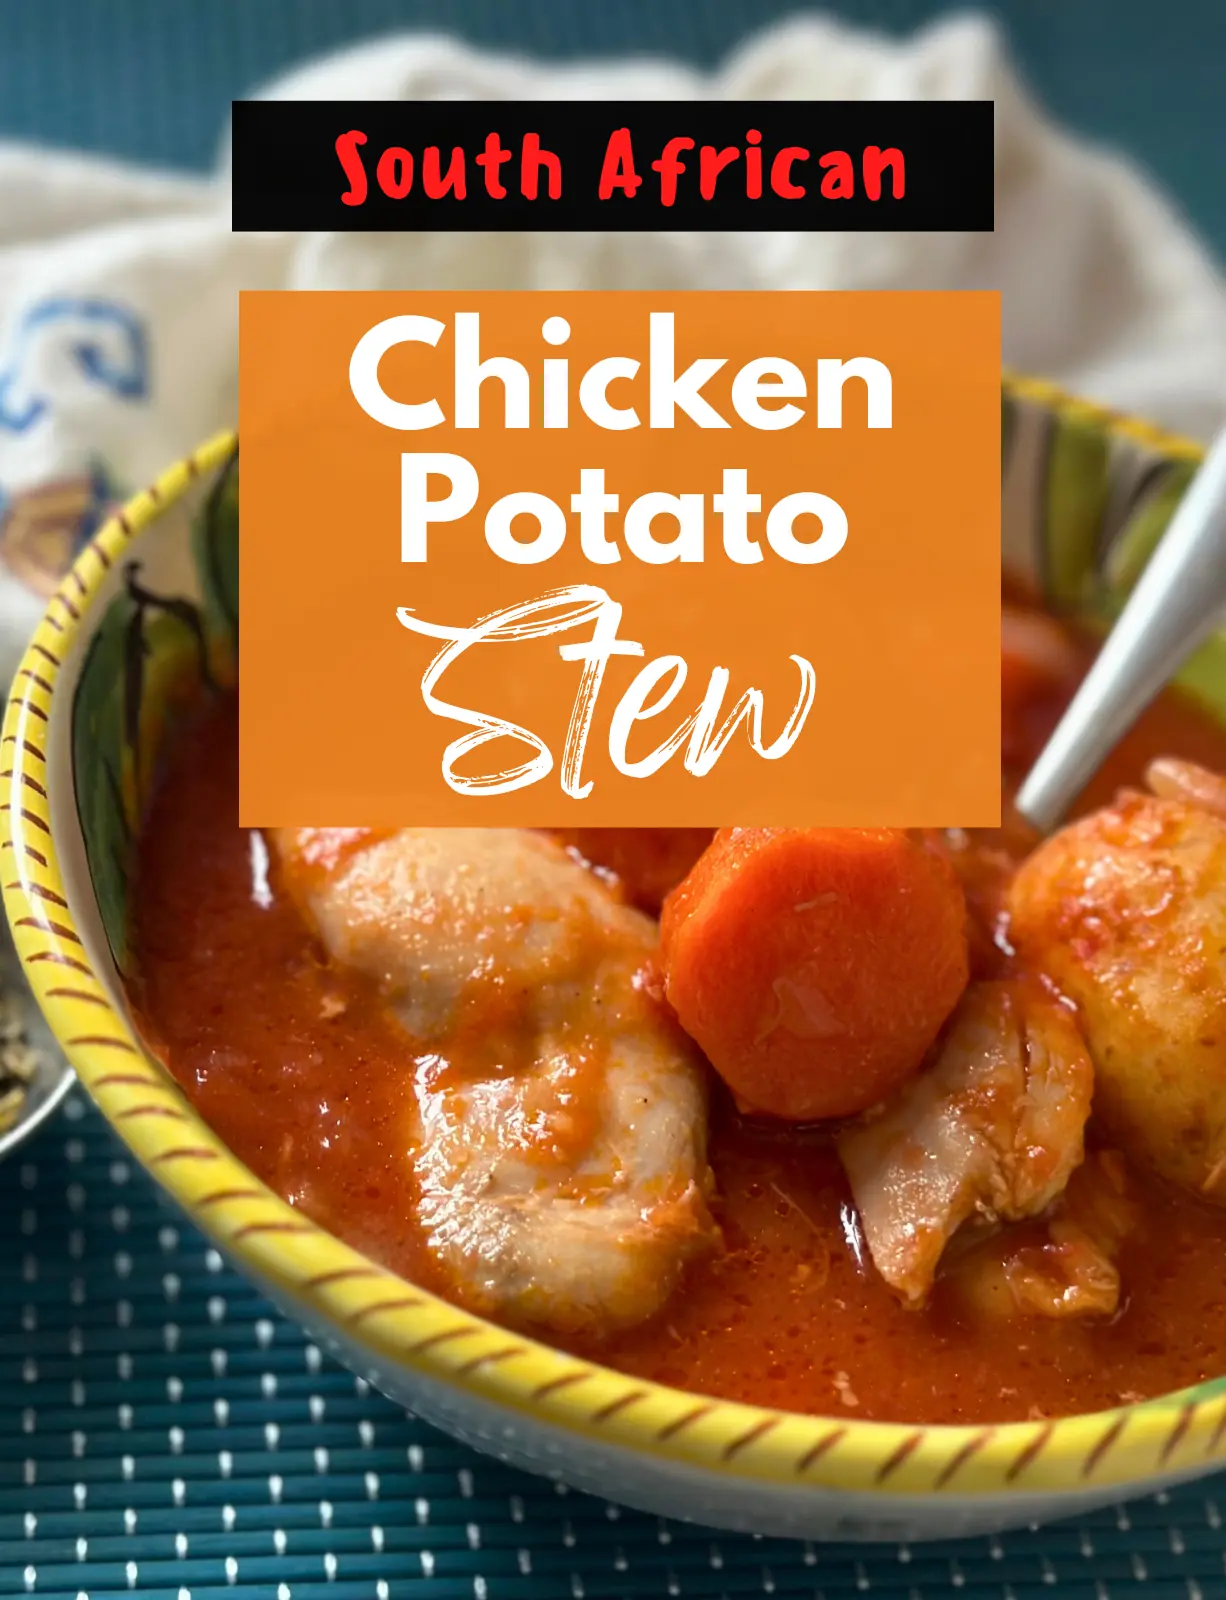 chicken potato stew, chicken tomato stew, chicken stew recipe, south african chicken recipe, south african chicken recipes